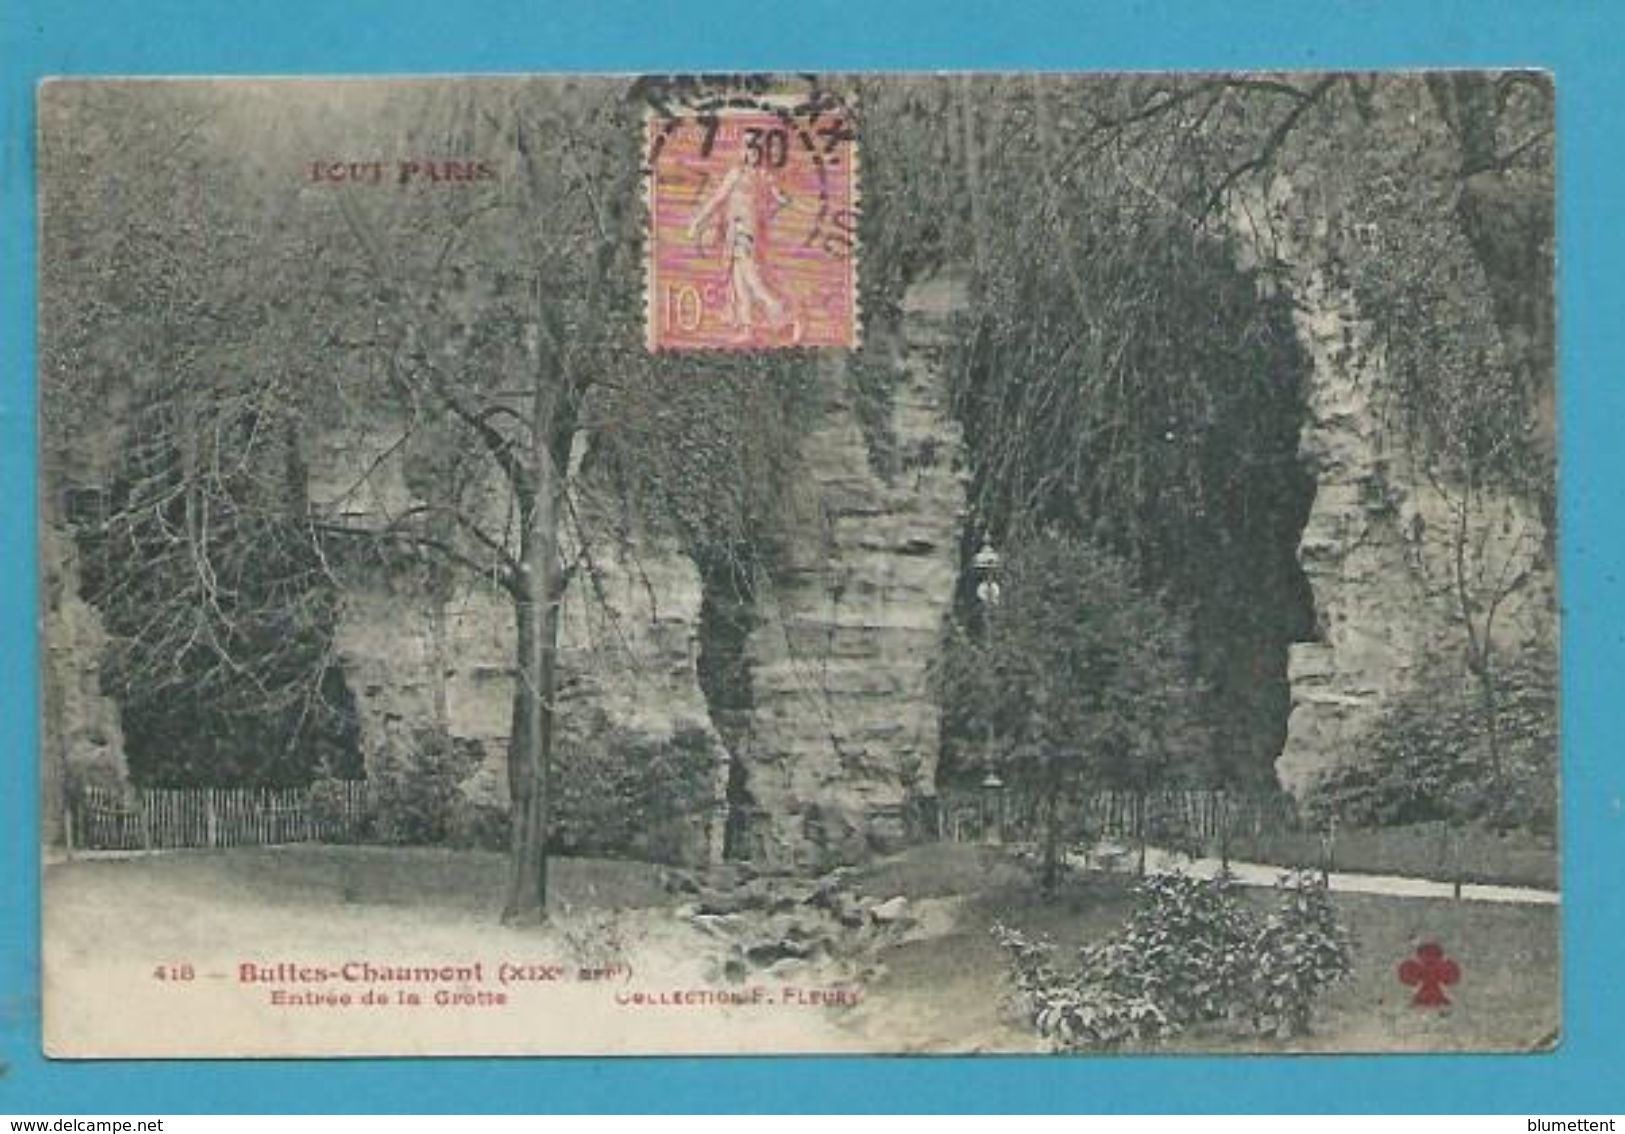 CPA TOUT PARIS 418 - Buttes Chaumont Entrée De La Grotte (XIXème Arrt.) Ed. FLEURY - Paris (19)